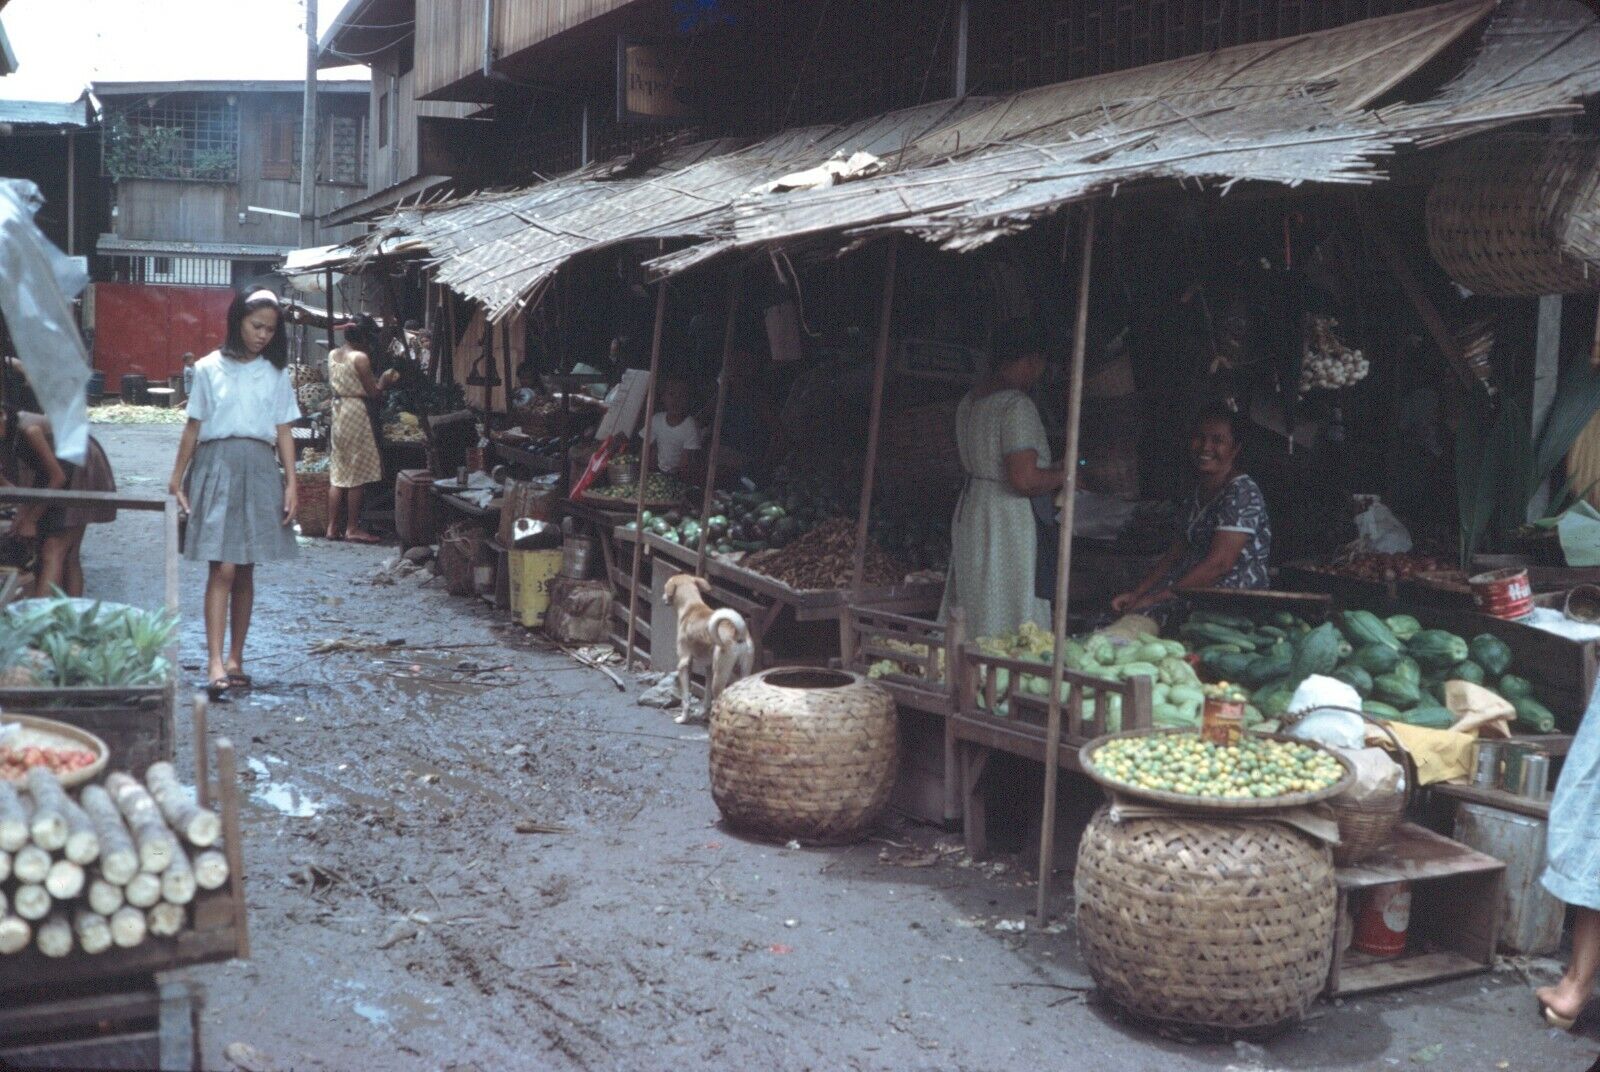 1968 Outdoor Bazaar Food Market Vintage 35mm Slide